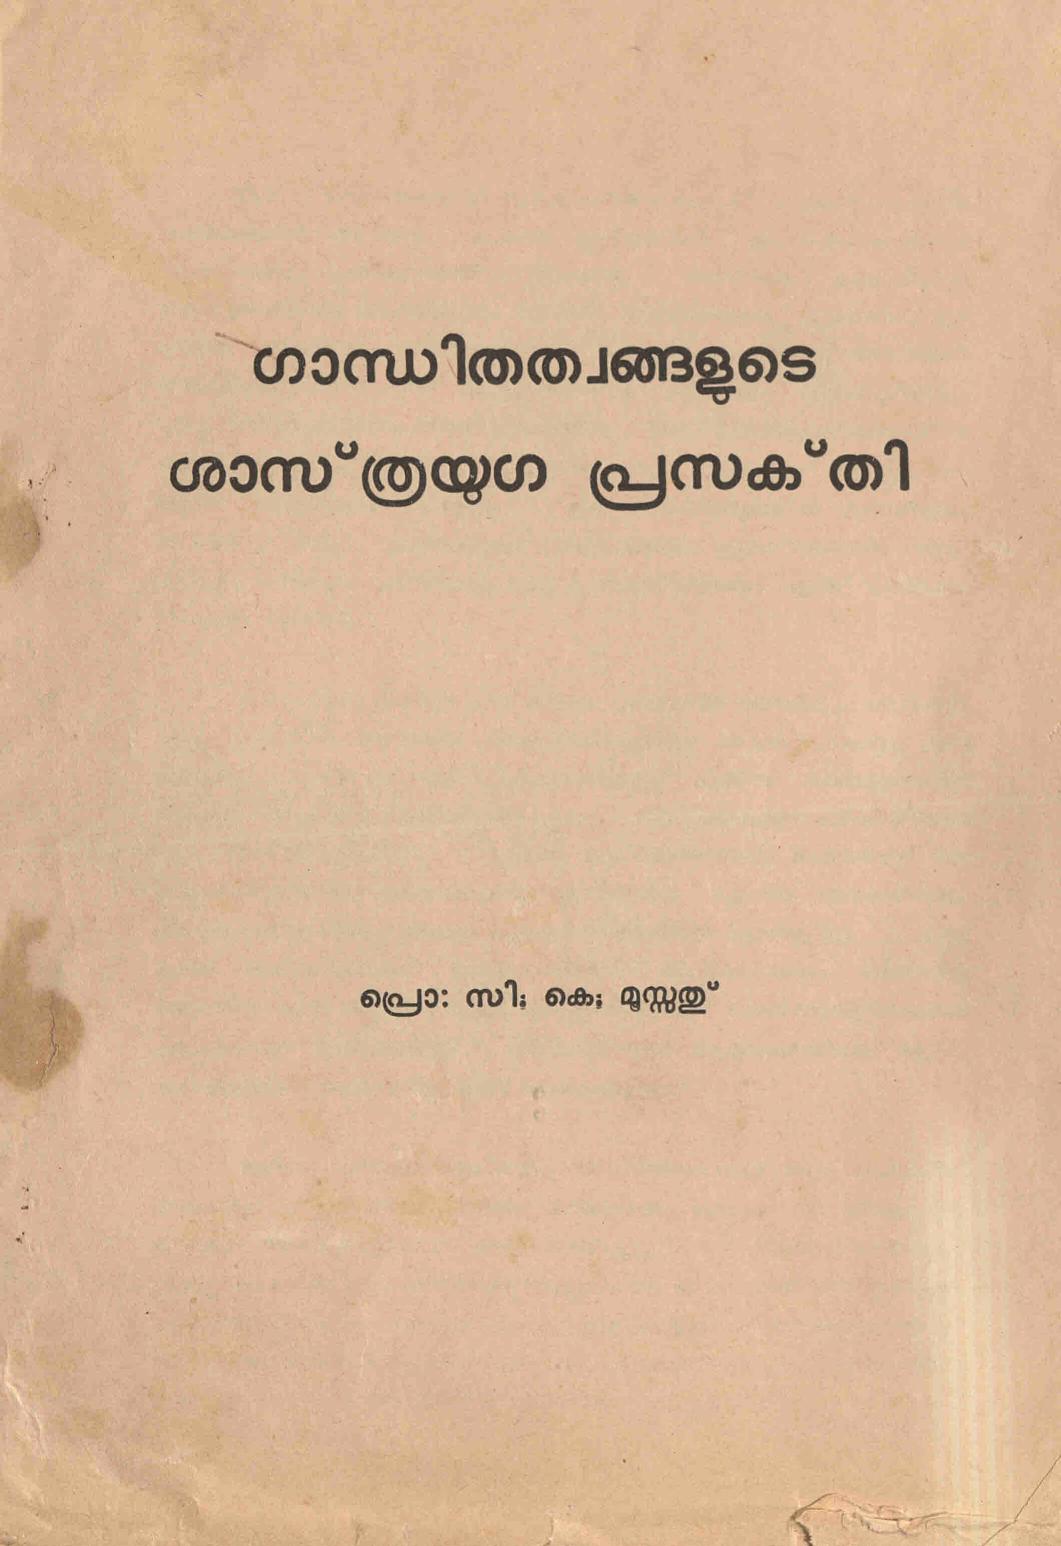 1977 - ഗാന്ധിതത്വങ്ങളുടെ ശാസ്ത്രയുഗ പ്രസക്തി - സി.കെ. മൂസ്സത്